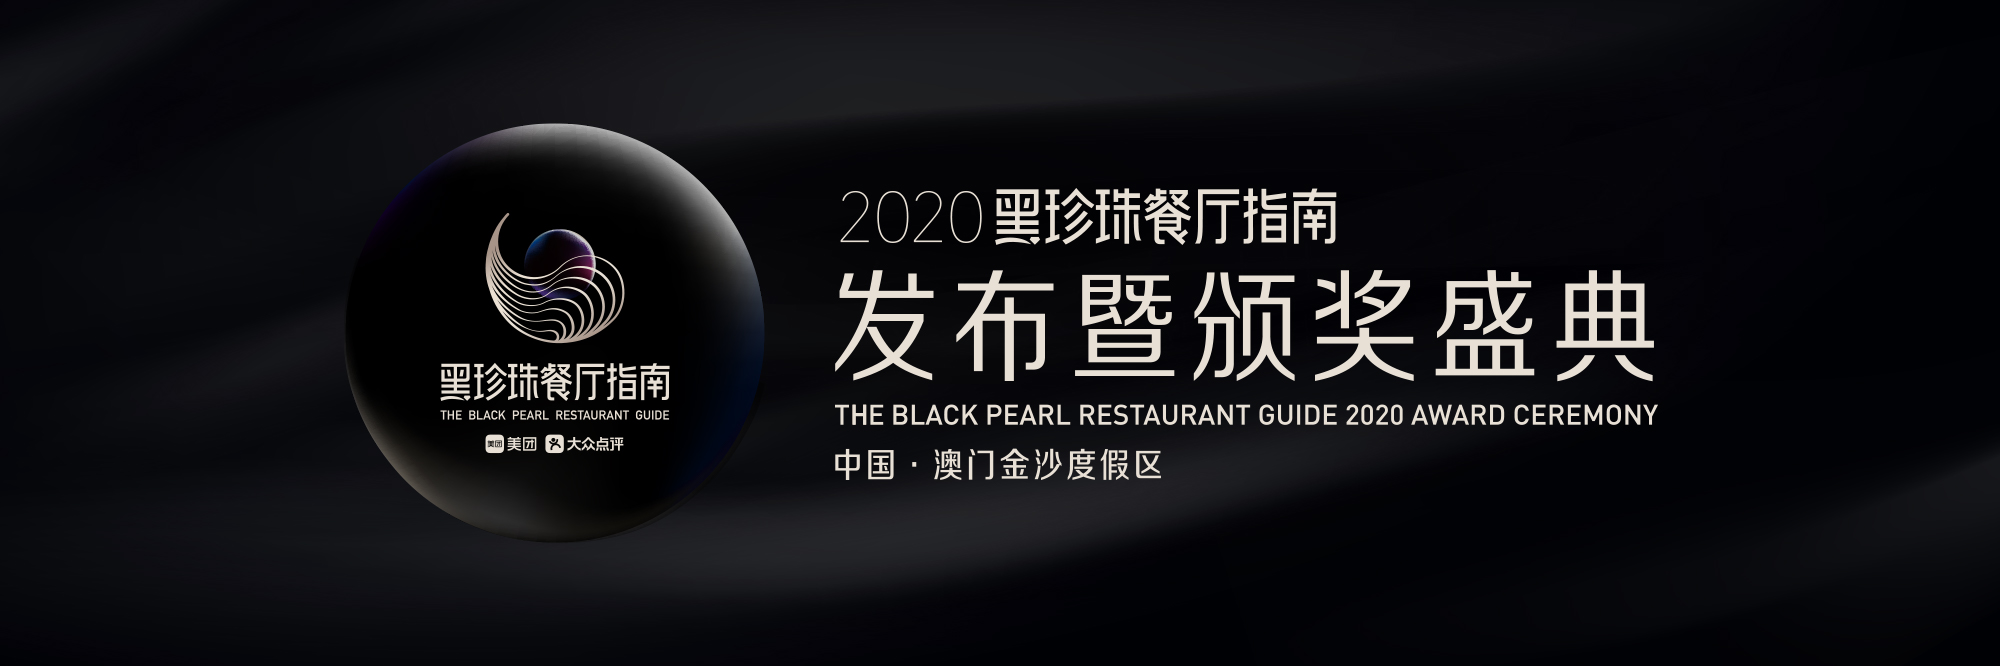 2020黑珍珠餐厅指南发布暨颁奖盛典